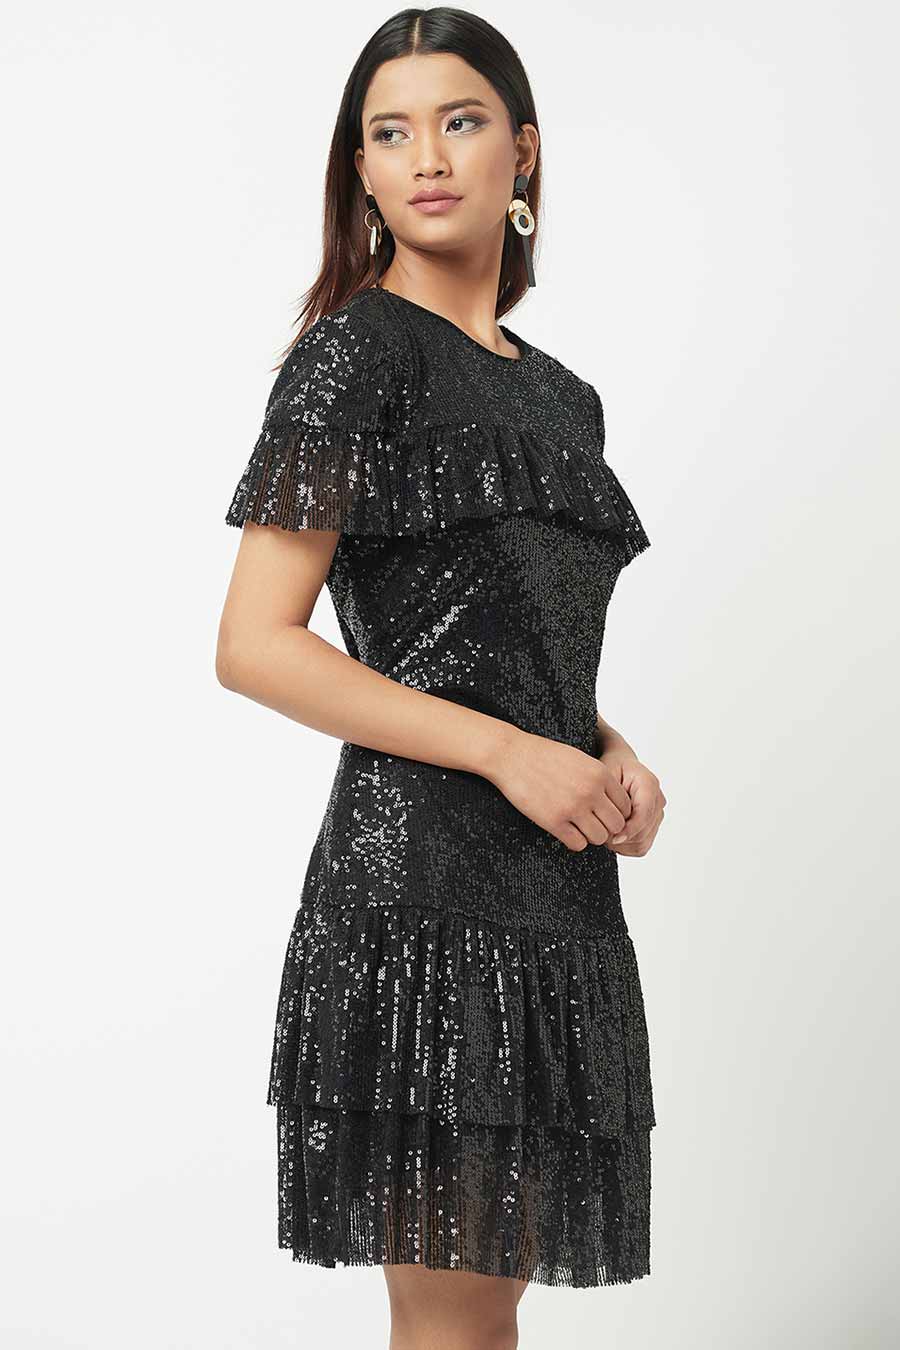 Black Shimmer Ruffle Dress